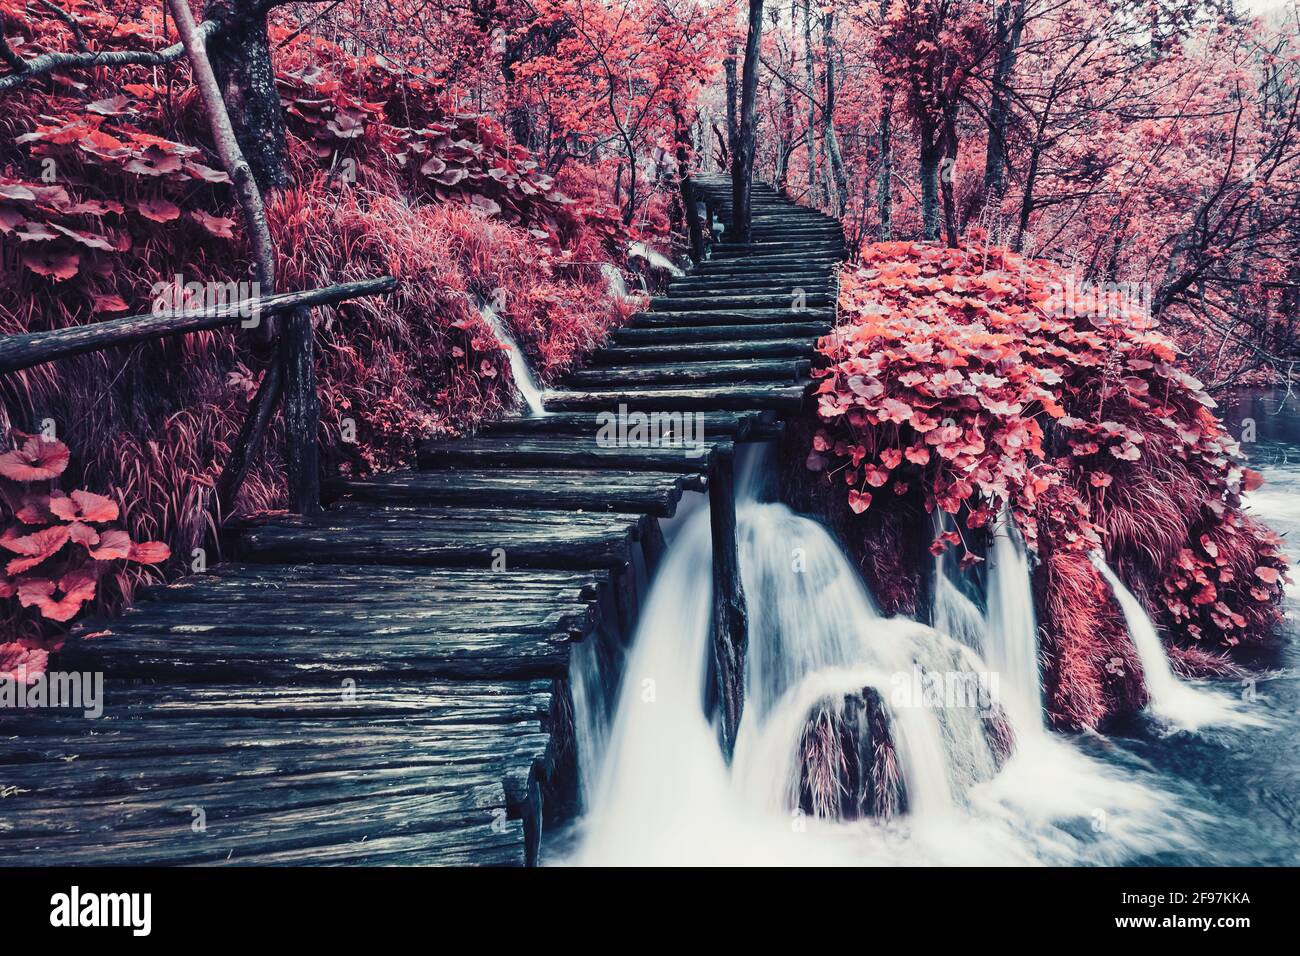 Molta acqua, foglie rosse e natura mozzafiato nel Parco Nazionale dei Laghi di Plitvice in Croazia. L'immagine è a colori manipolati. Foto Stock